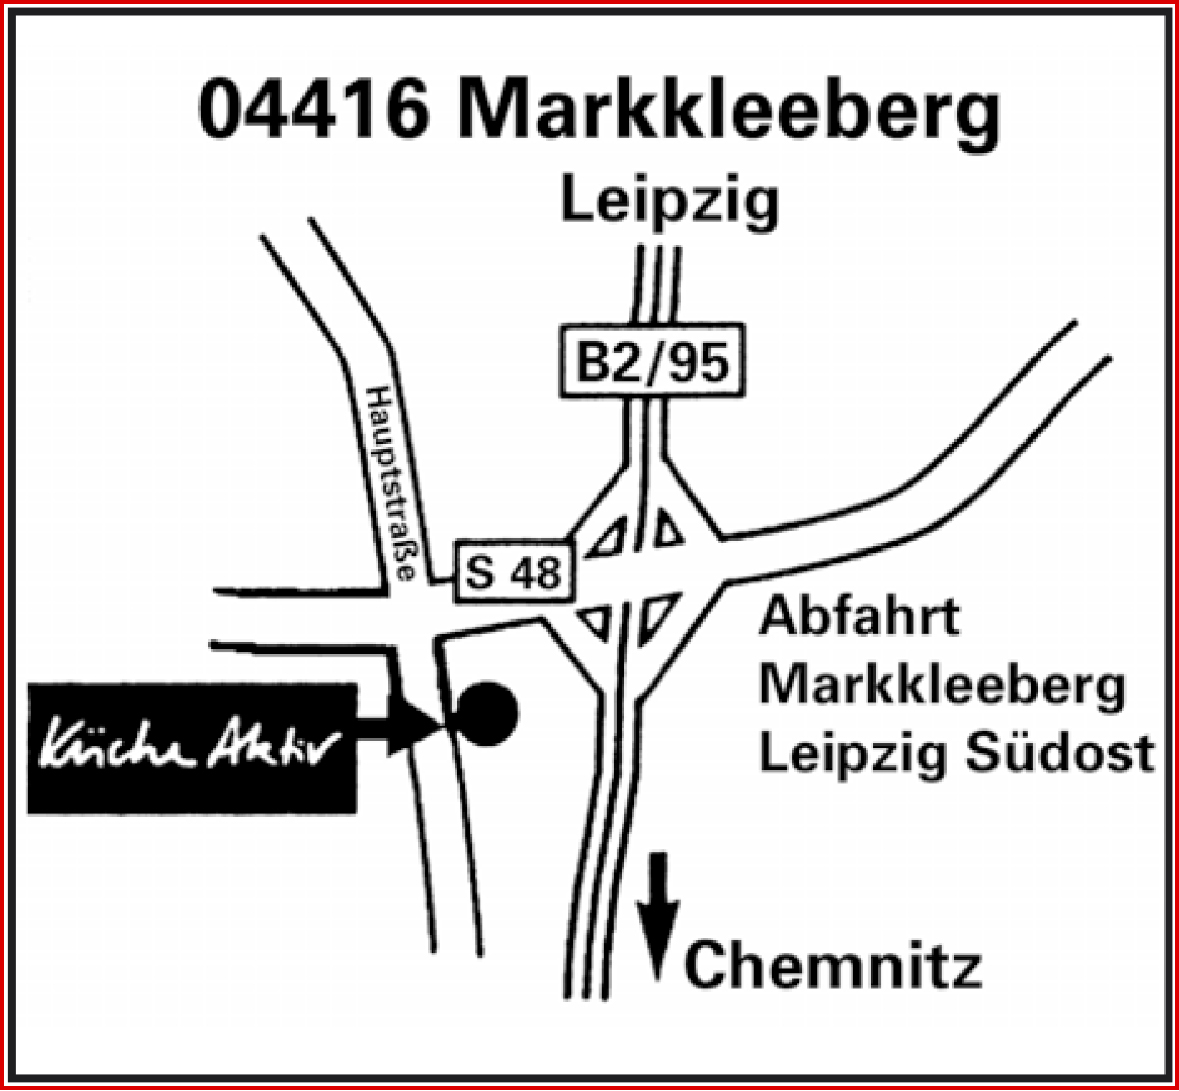 Das Bild zeigt den Küche Aktiv Standort in Markkleeberg